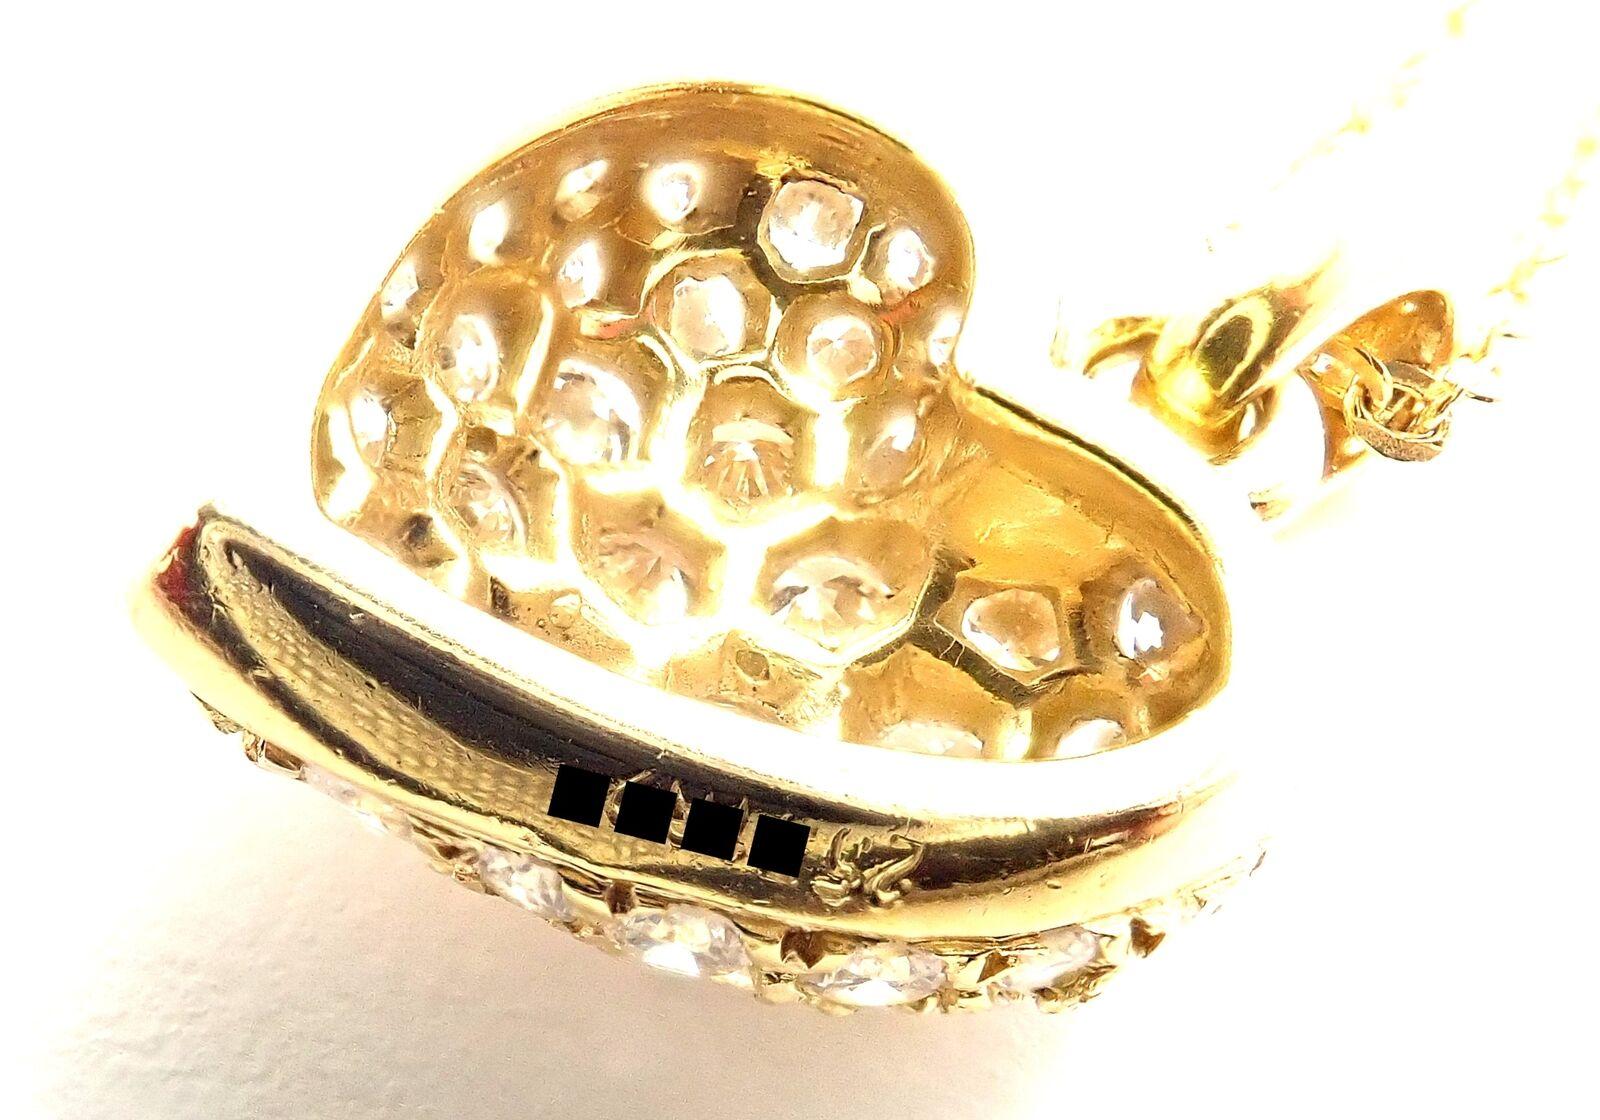 Brilliant Cut Cartier Diamond Pavé Large Heart Yellow Gold Pendant Necklace